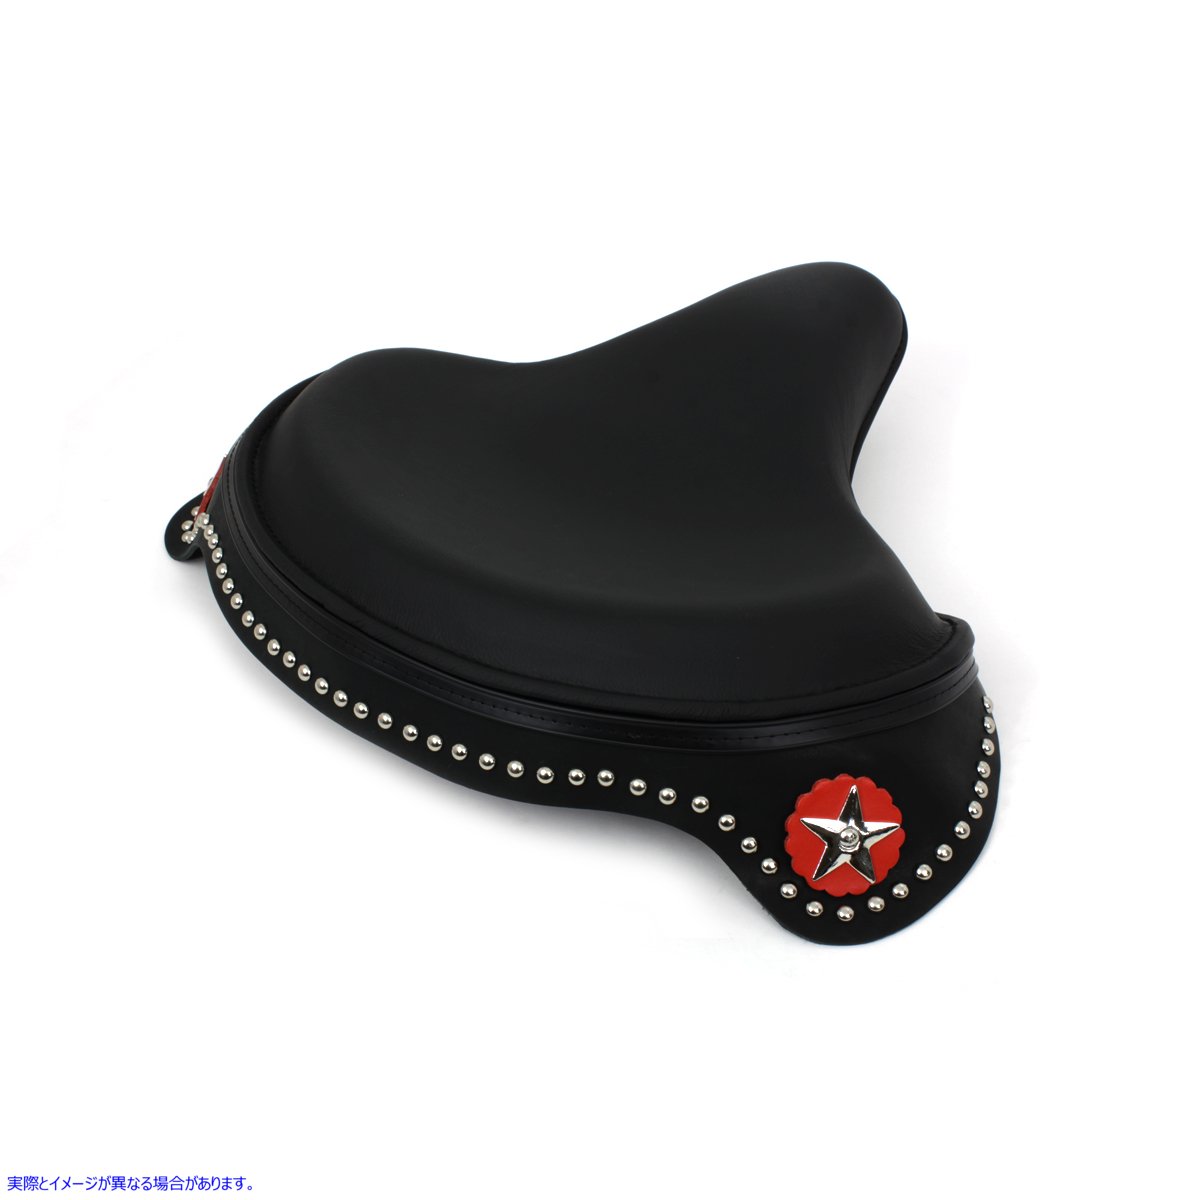 47-0946 スカート付きブラックレザーソロシート Black Leather Solo Seat with Skirt 取寄せ Vツイン (検索用／ Corbin Gentry